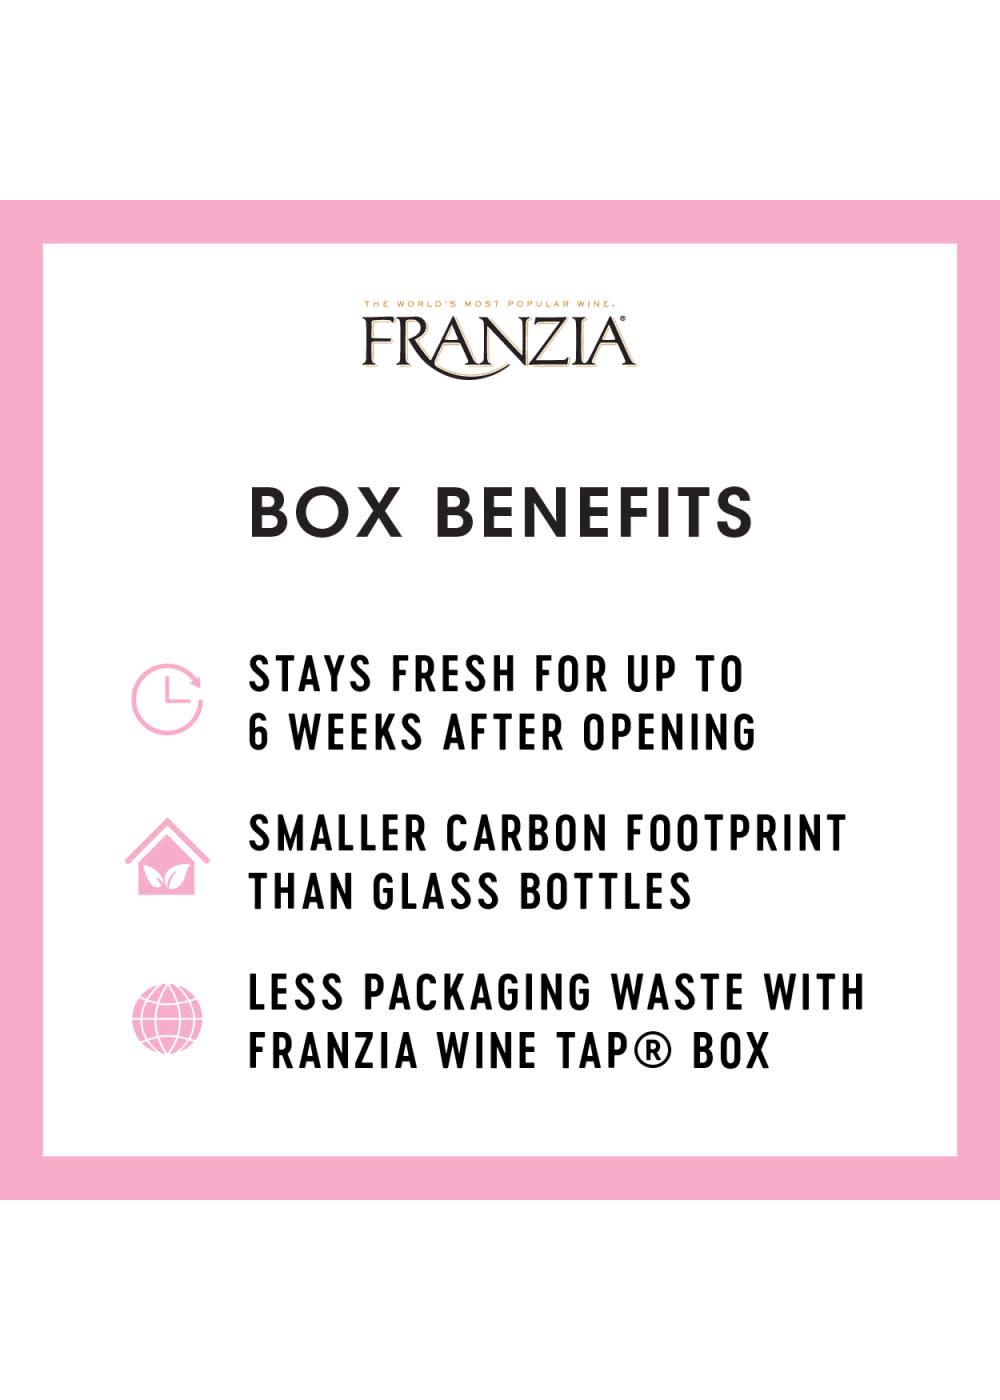 Franzia Sunset Blush Boxed Wine; image 6 of 7